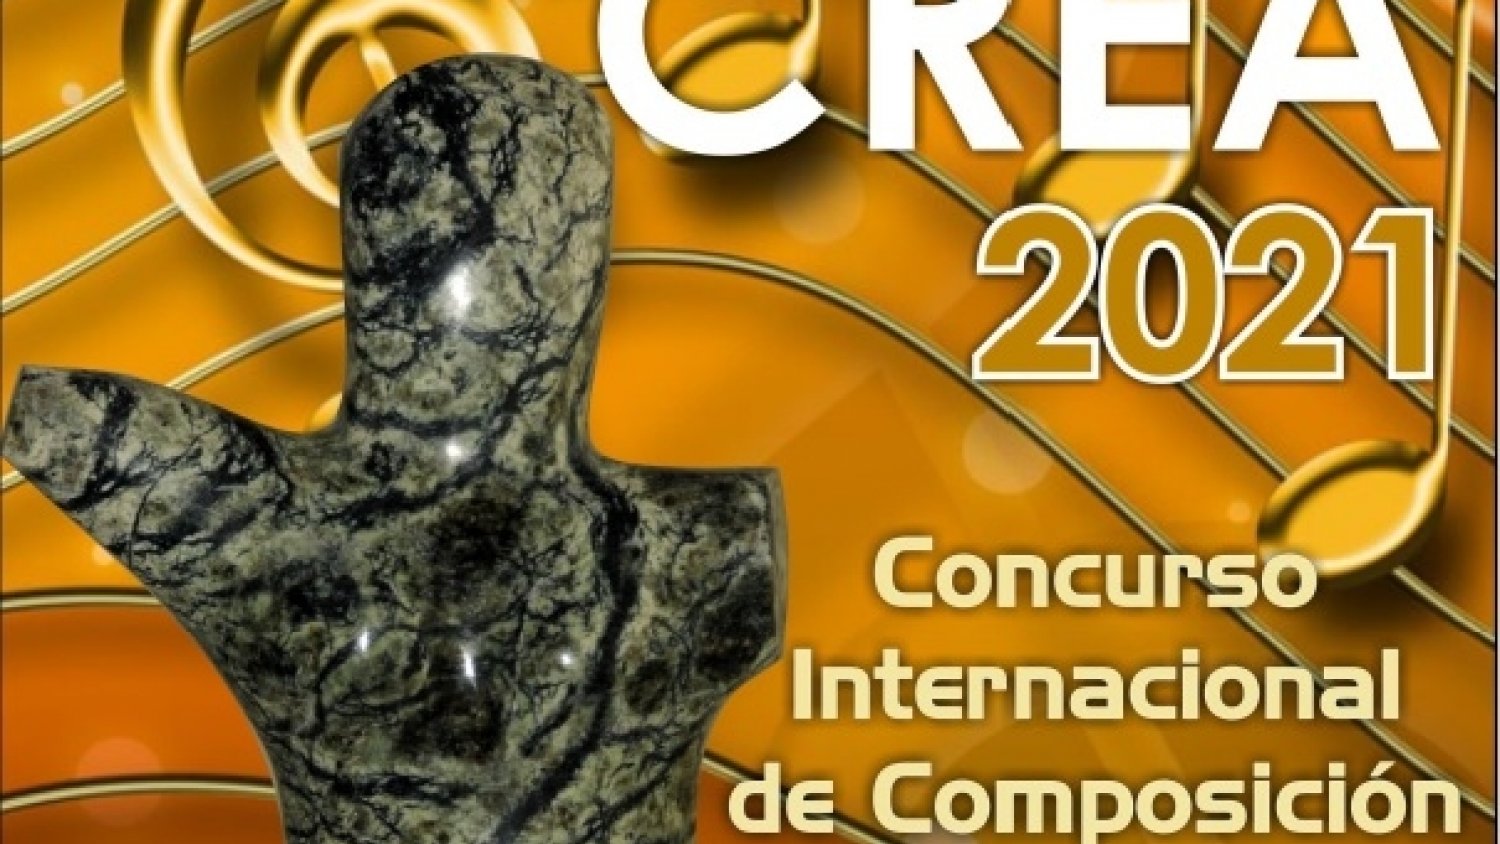 Estepona convoca el VII ‘Estepona CREA 2021’ dotado con 10.000 euros